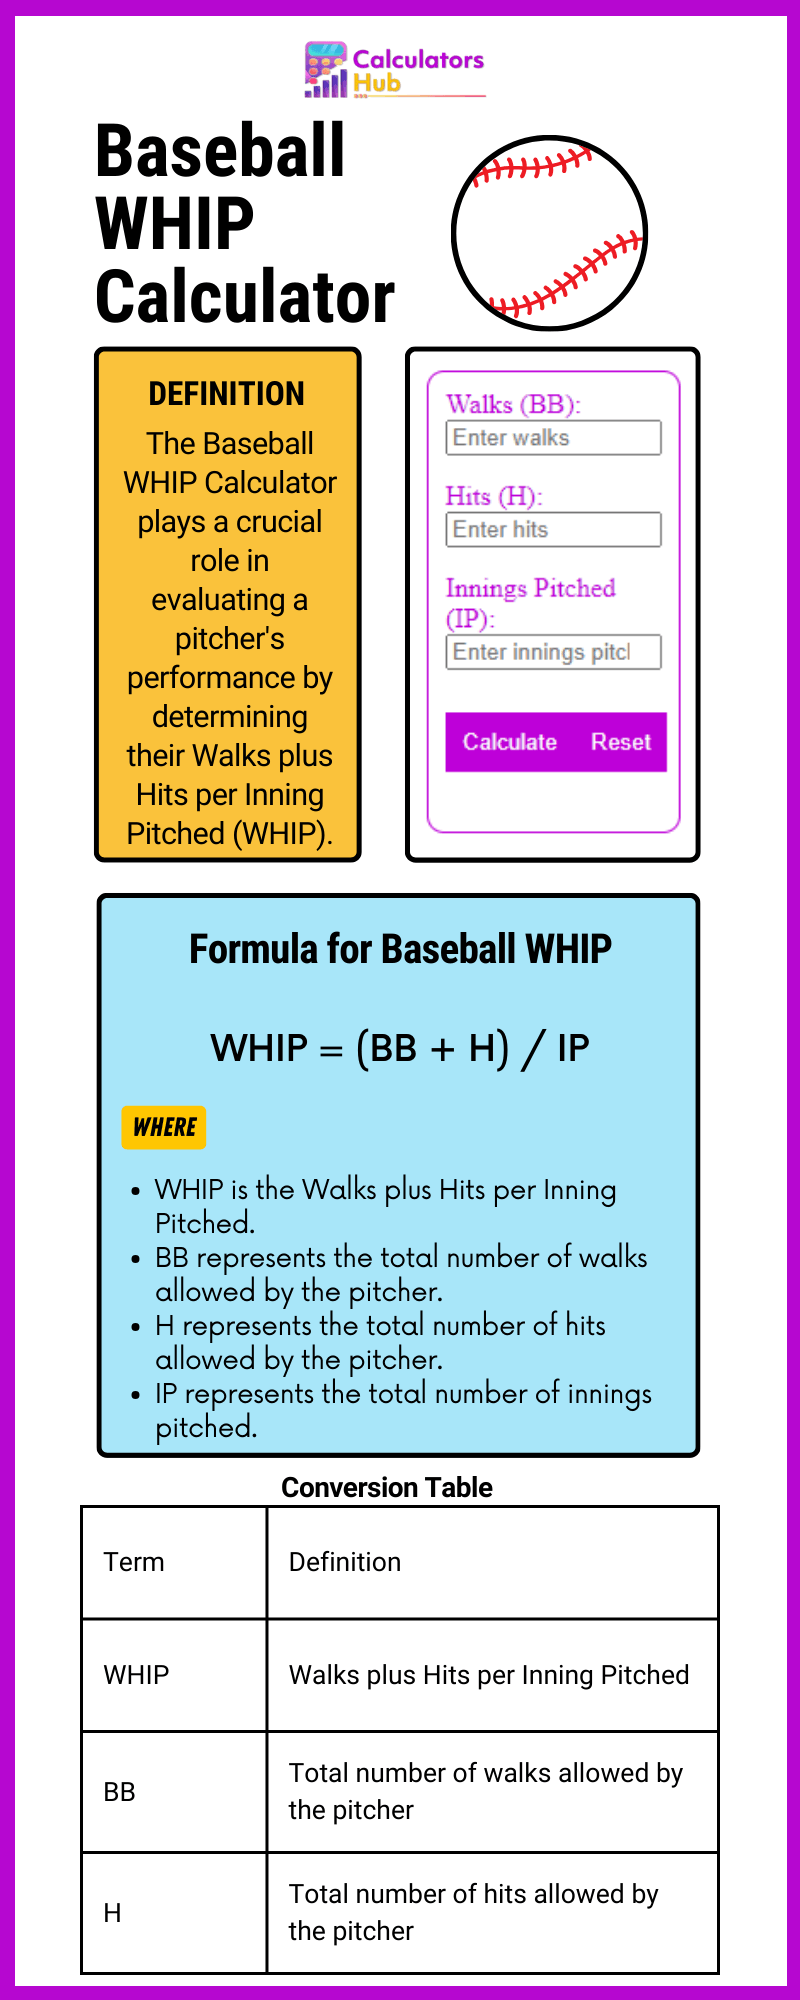 Baseball WHIP Calculator